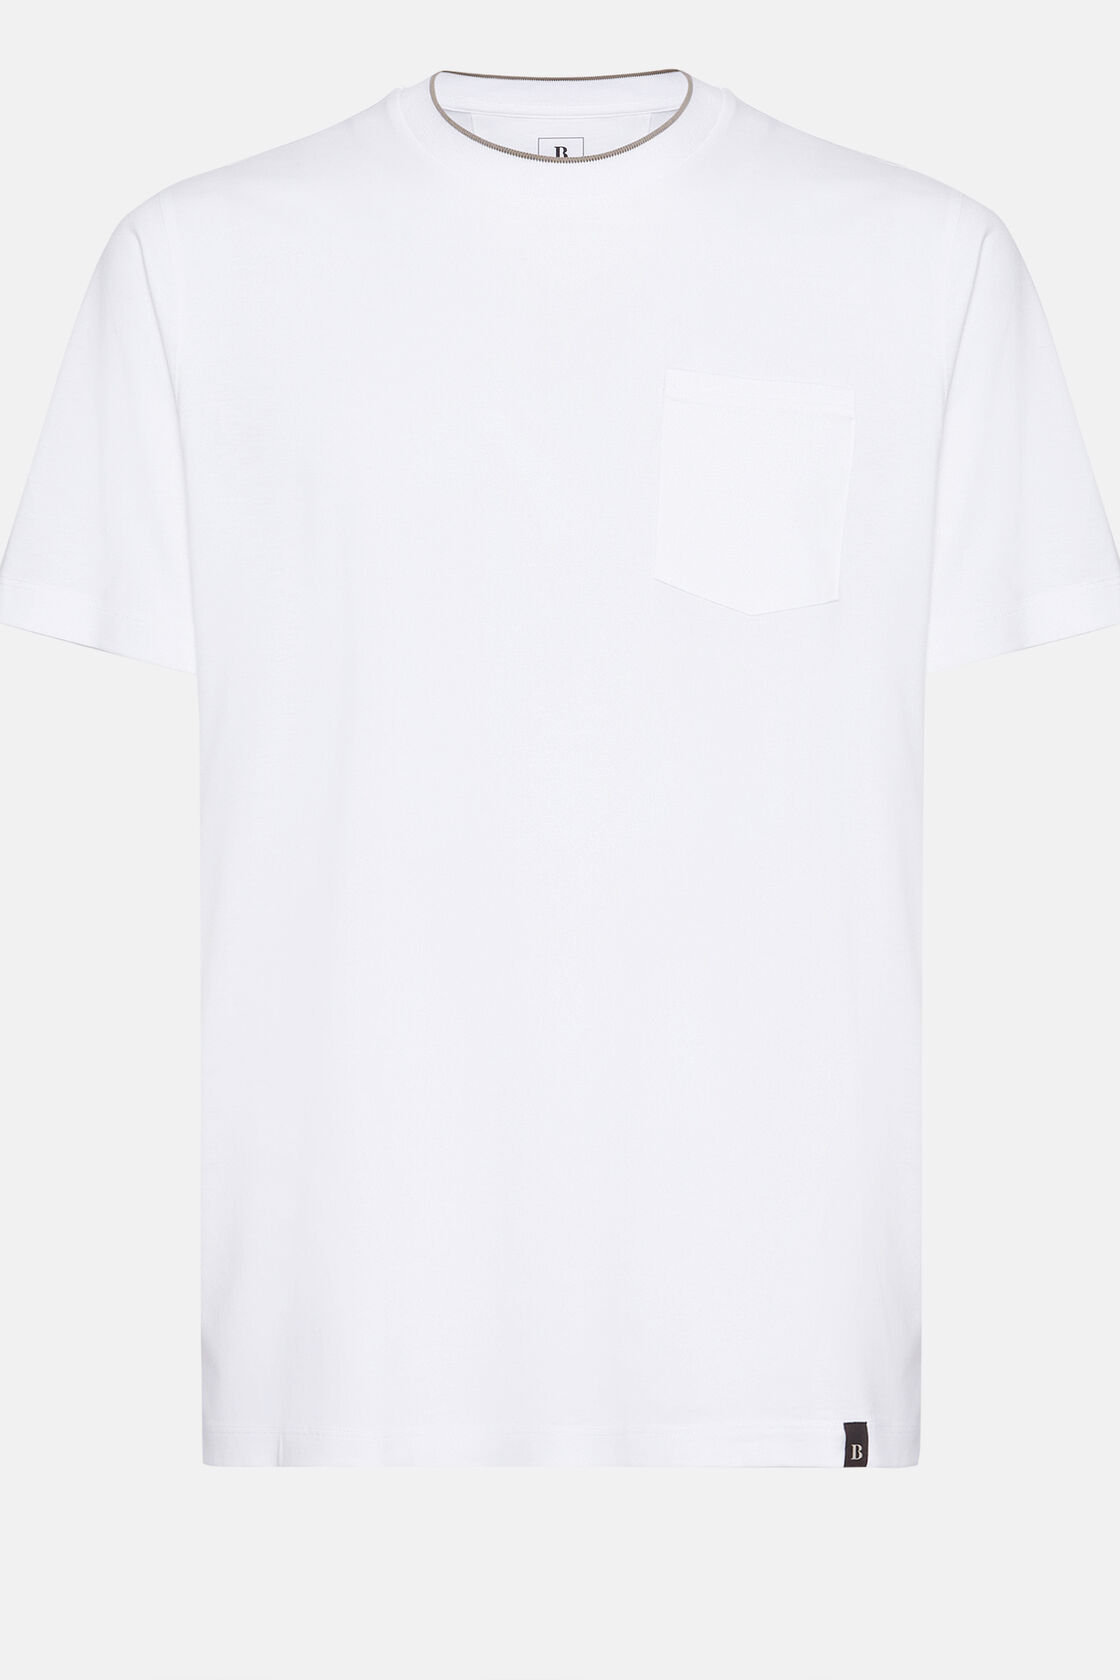 T-shirt em malha de algodão e tencel, White, hi-res